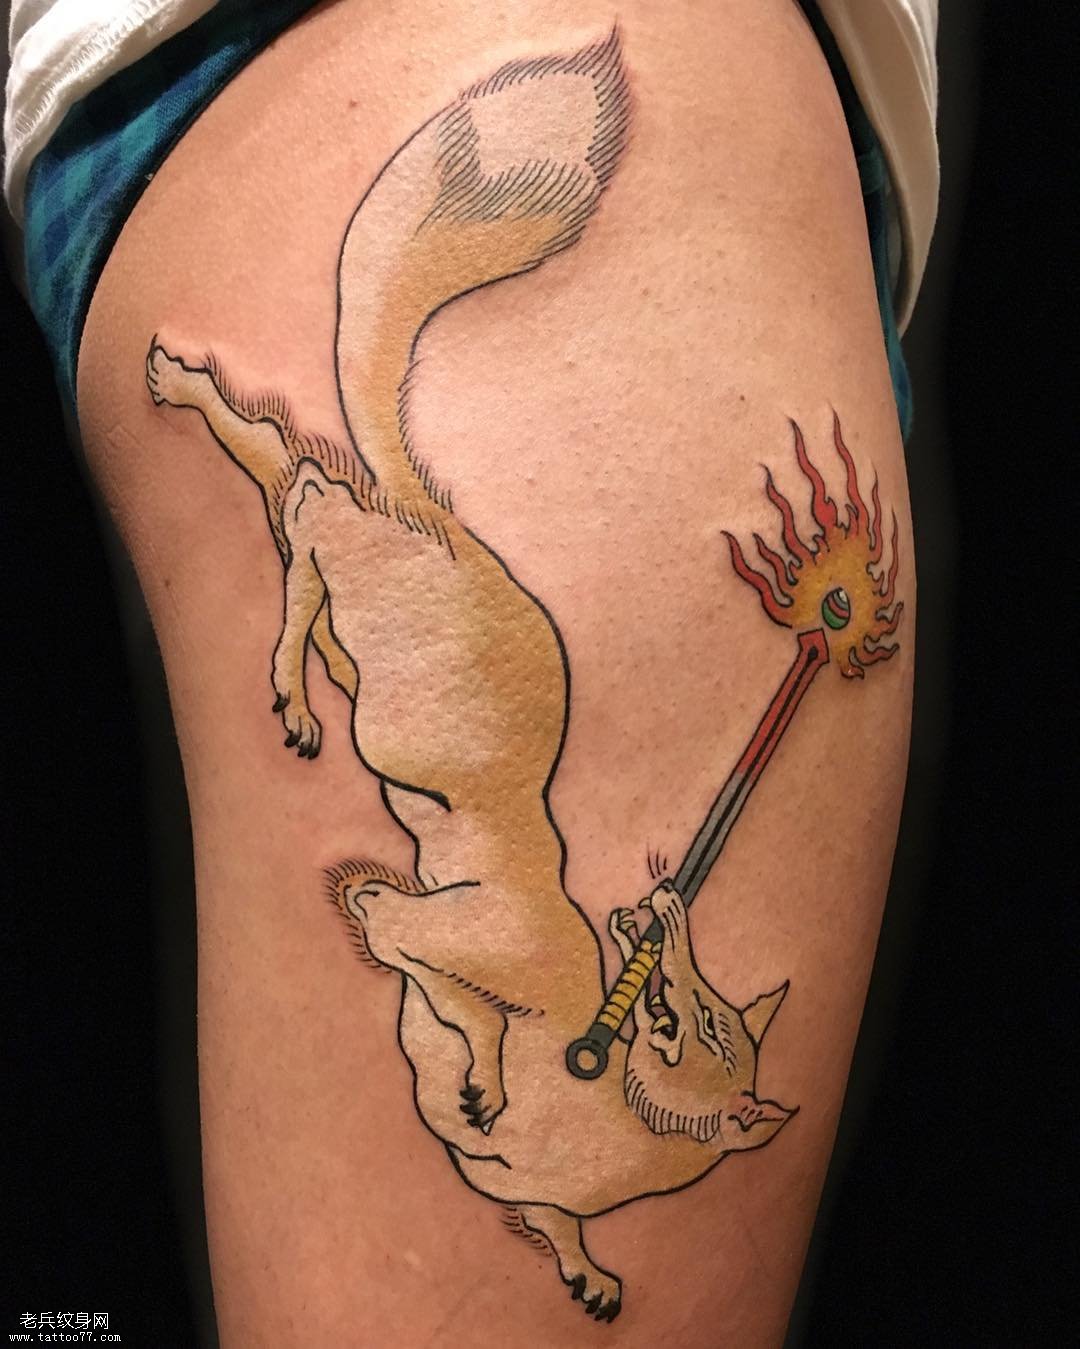 大腿黄鼠狼纹身图案